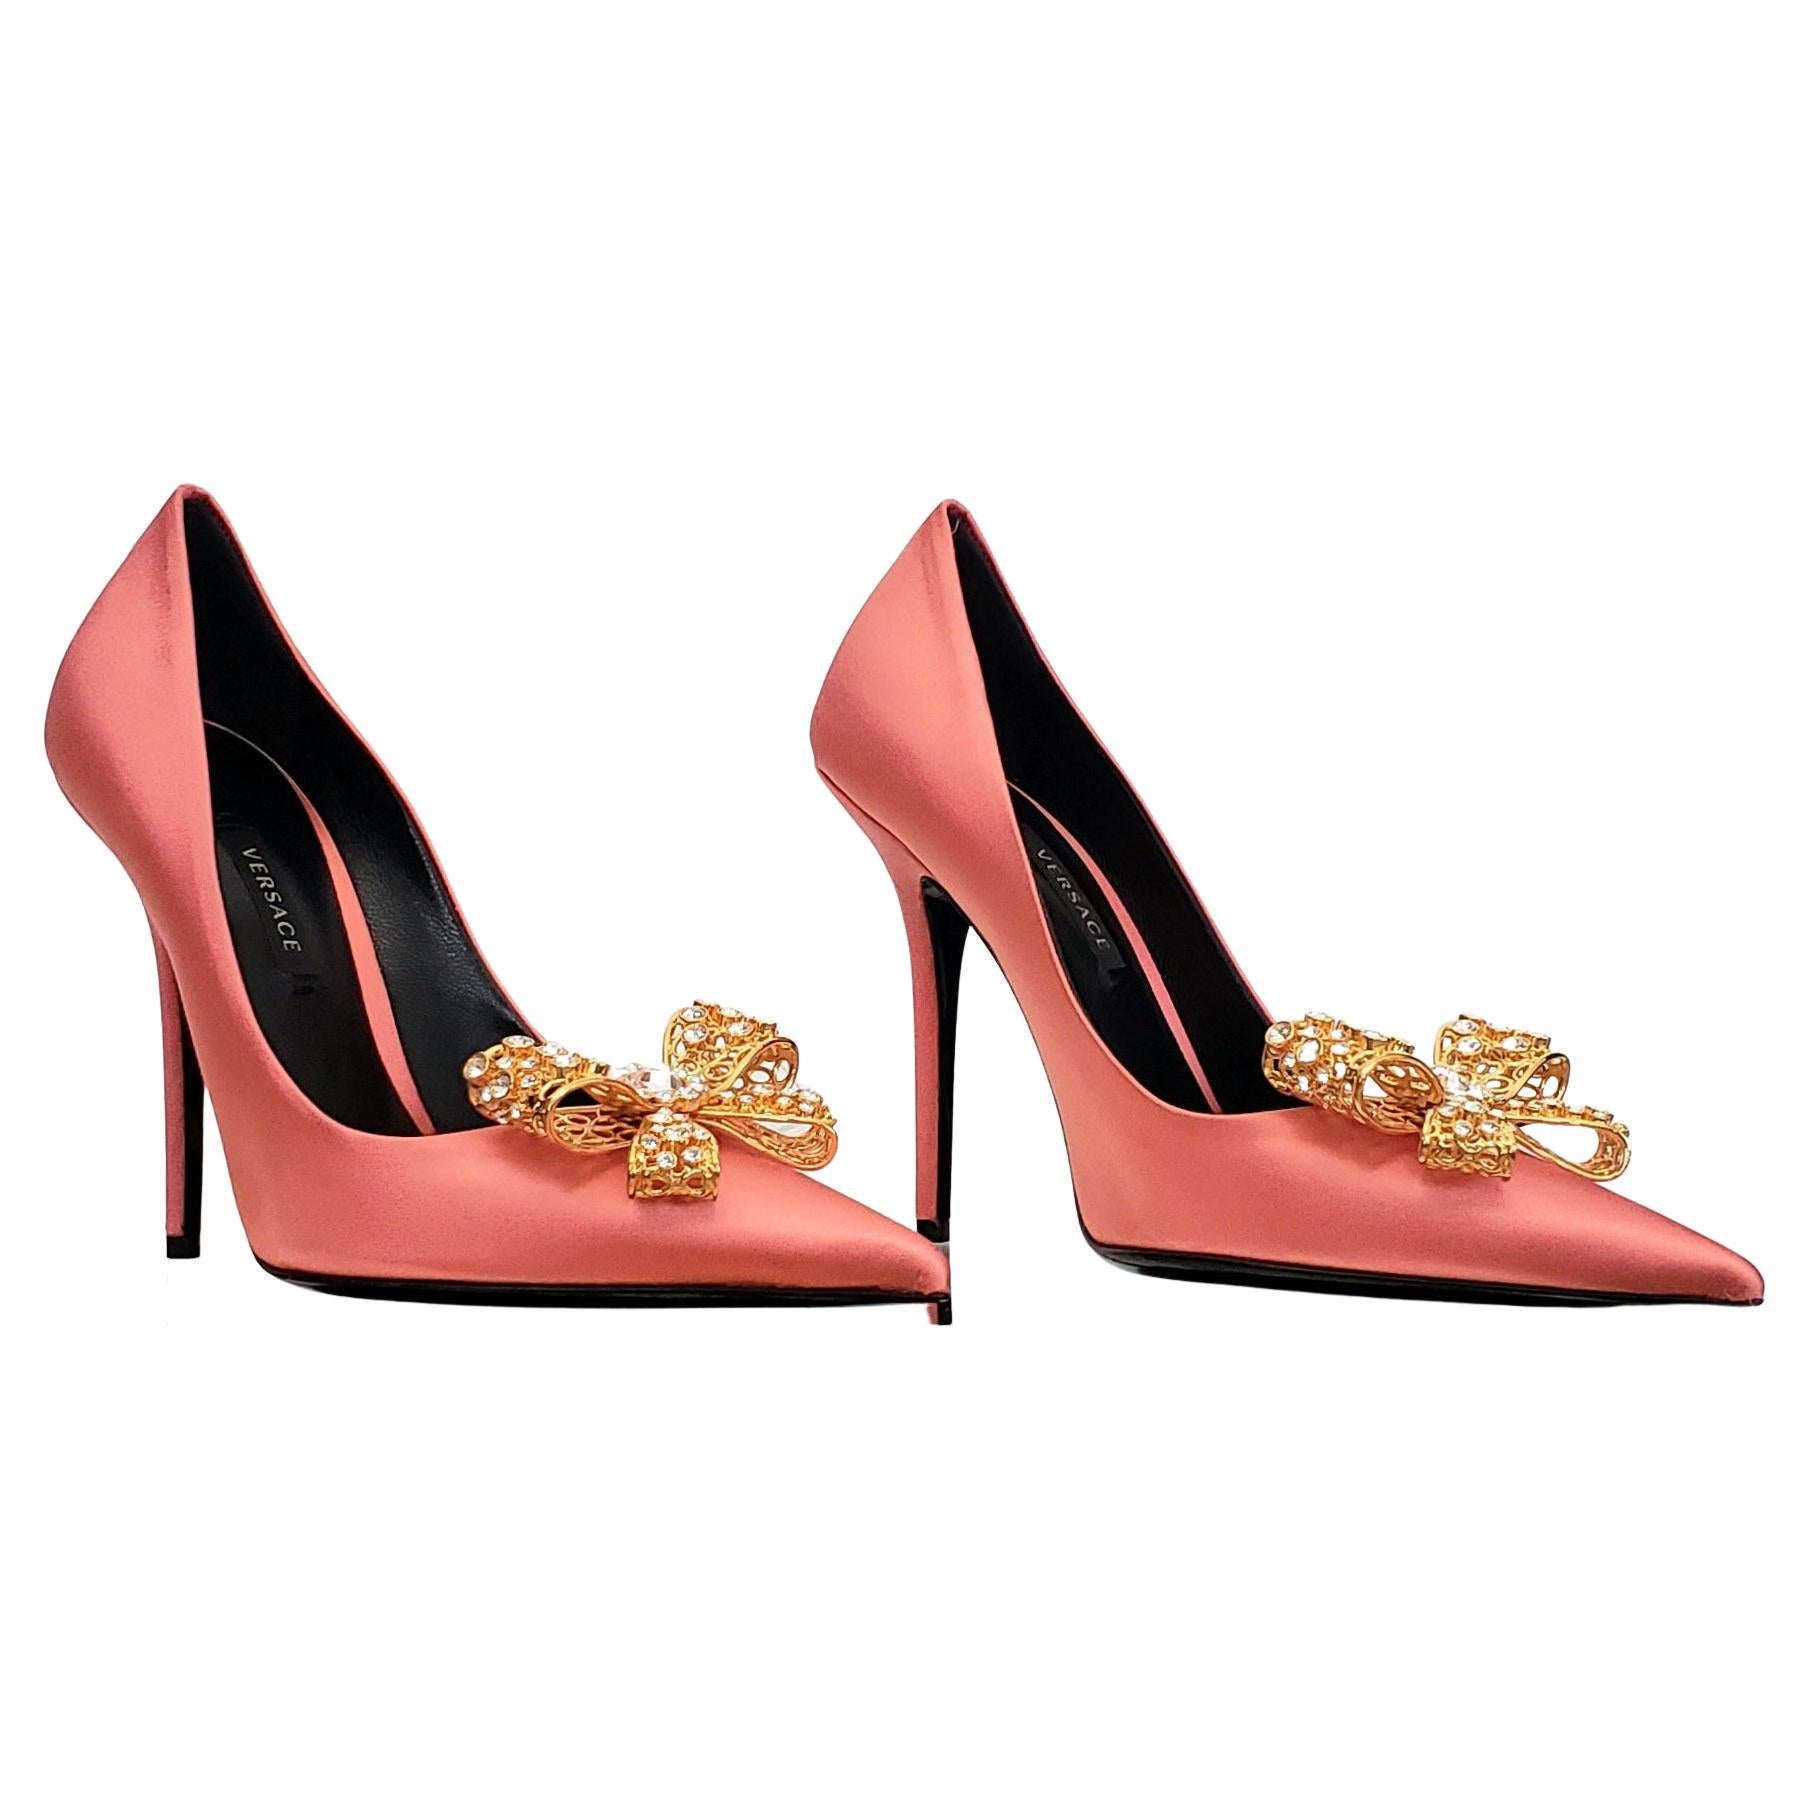 Chaussures de sport Versace 2019 ROSE SATIN ornées de cristaux dorés, taille 38 - 8 en vente